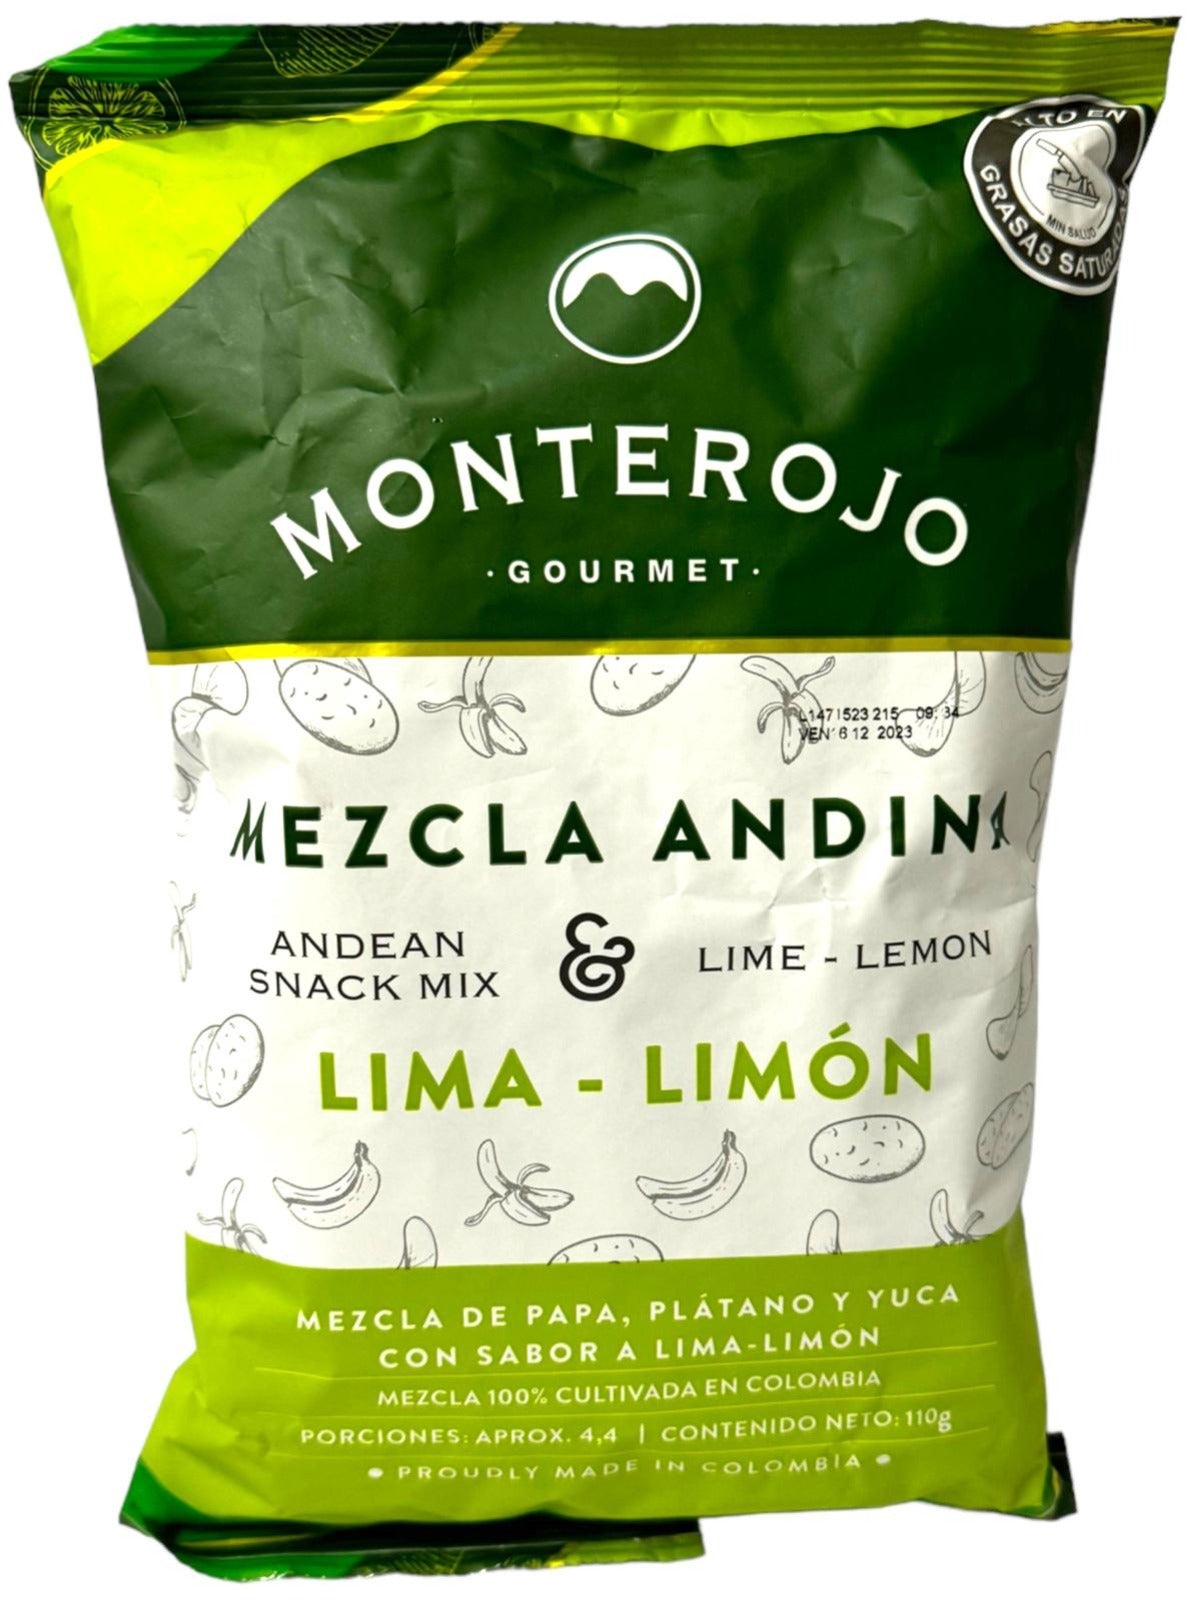 Monterojo Mezcla Andina Snack Multi Pack 110g Each - 3 Pack Total 330g